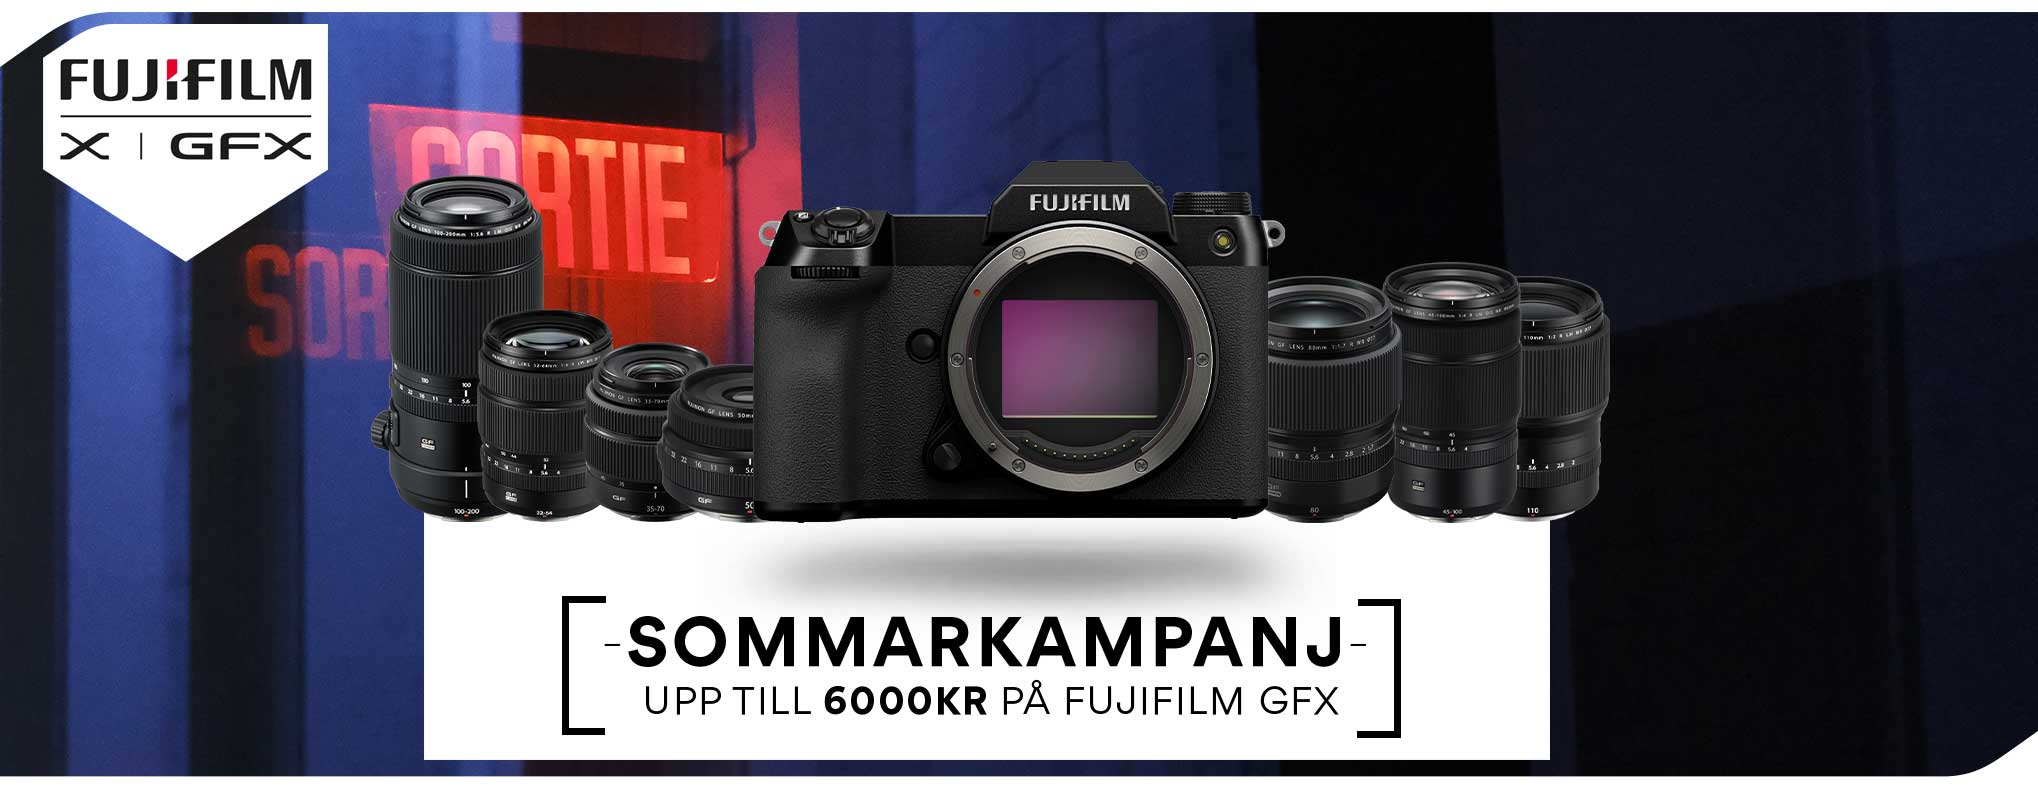 Fujifilm-GFX-GF-Campaign-SE